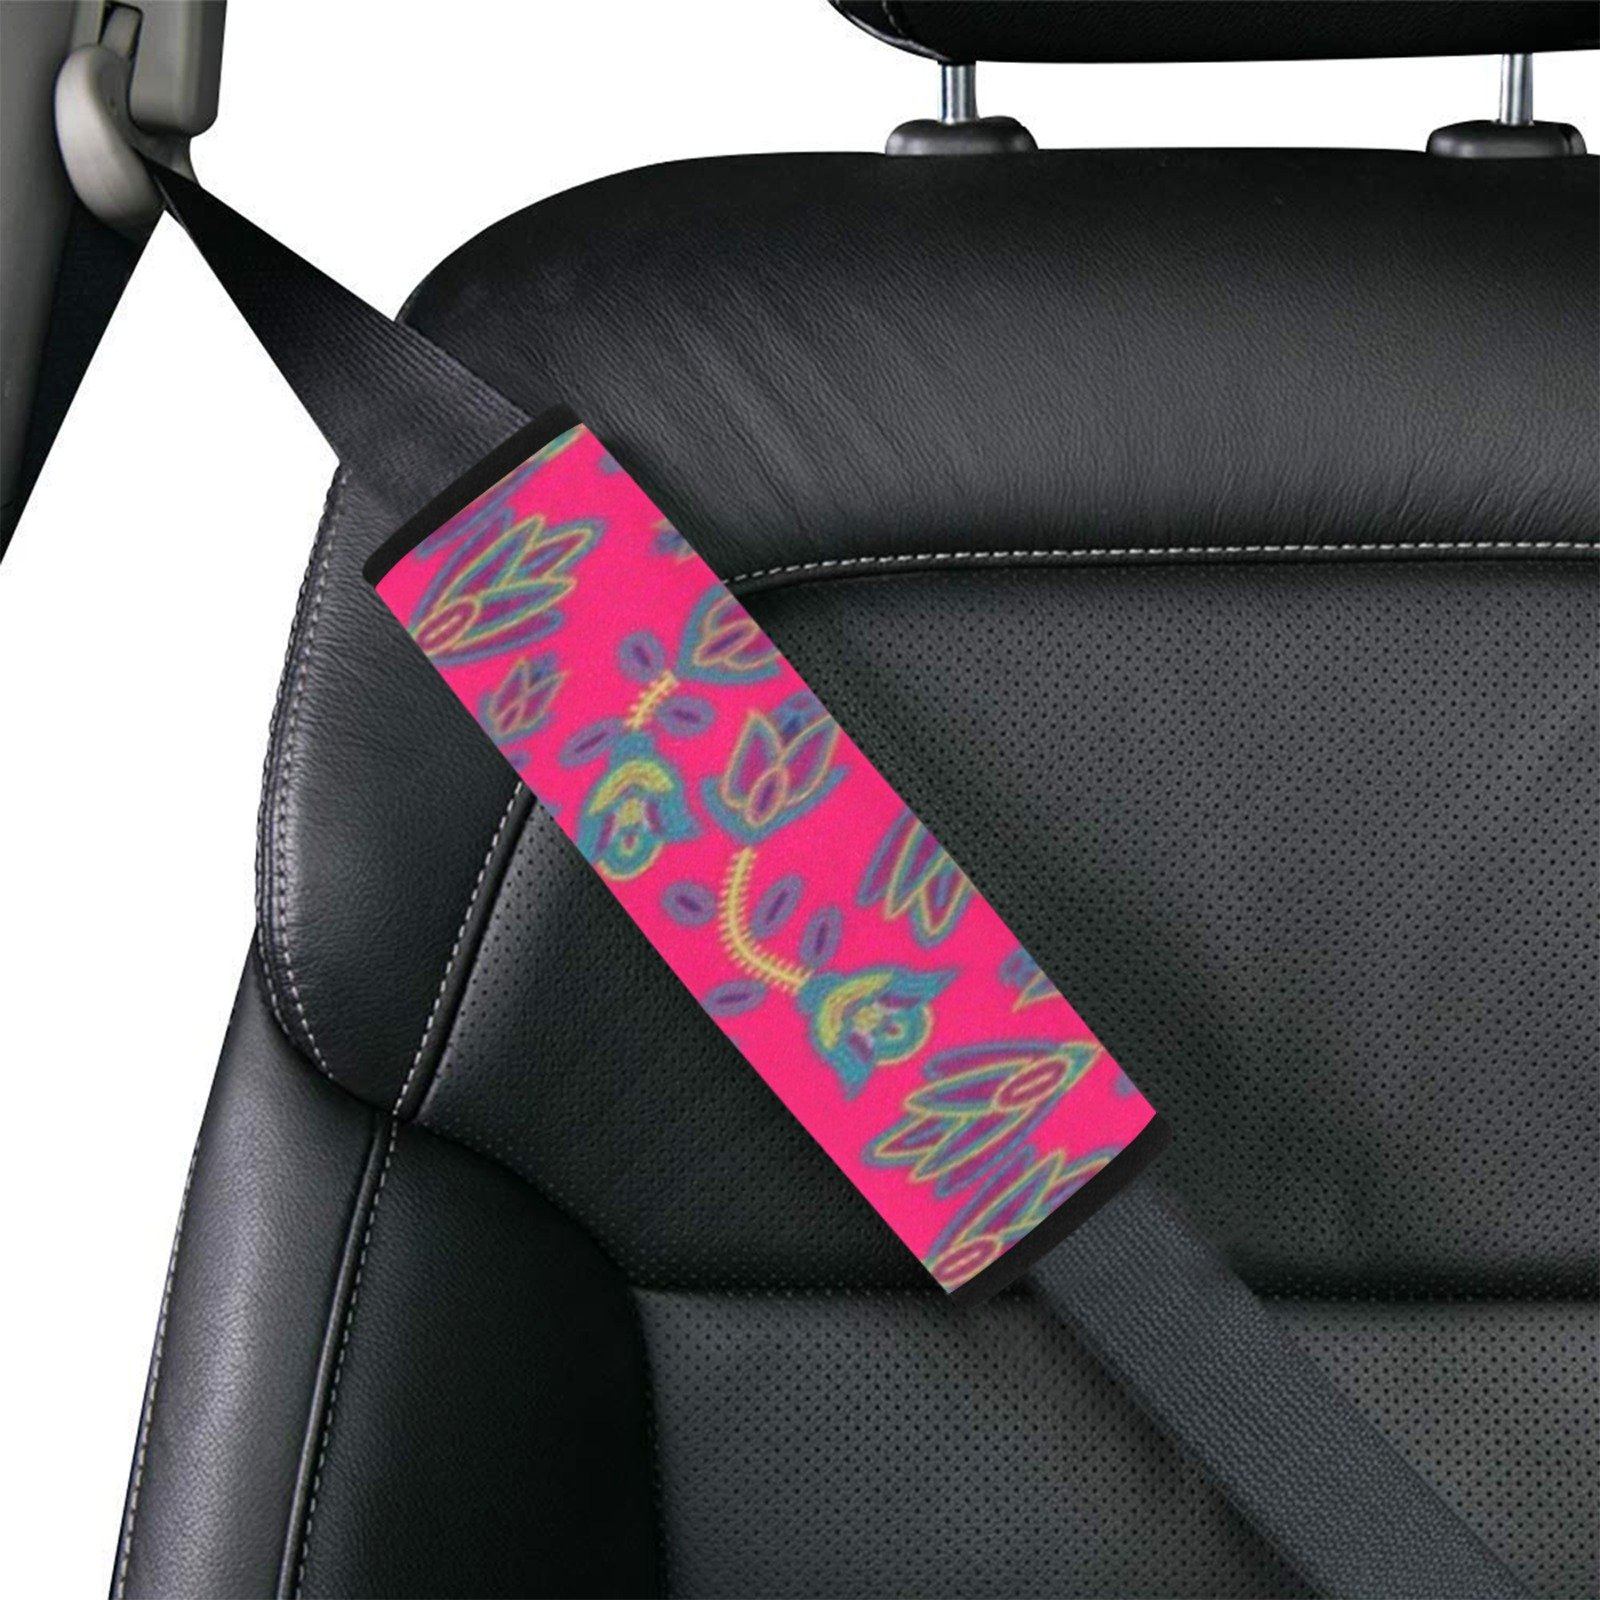 Beaded Lemonade Car Seat Belt Cover 7''x12.6'' (Pack of 2) Car Seat Belt Cover 7x12.6 (Pack of 2) e-joyer 